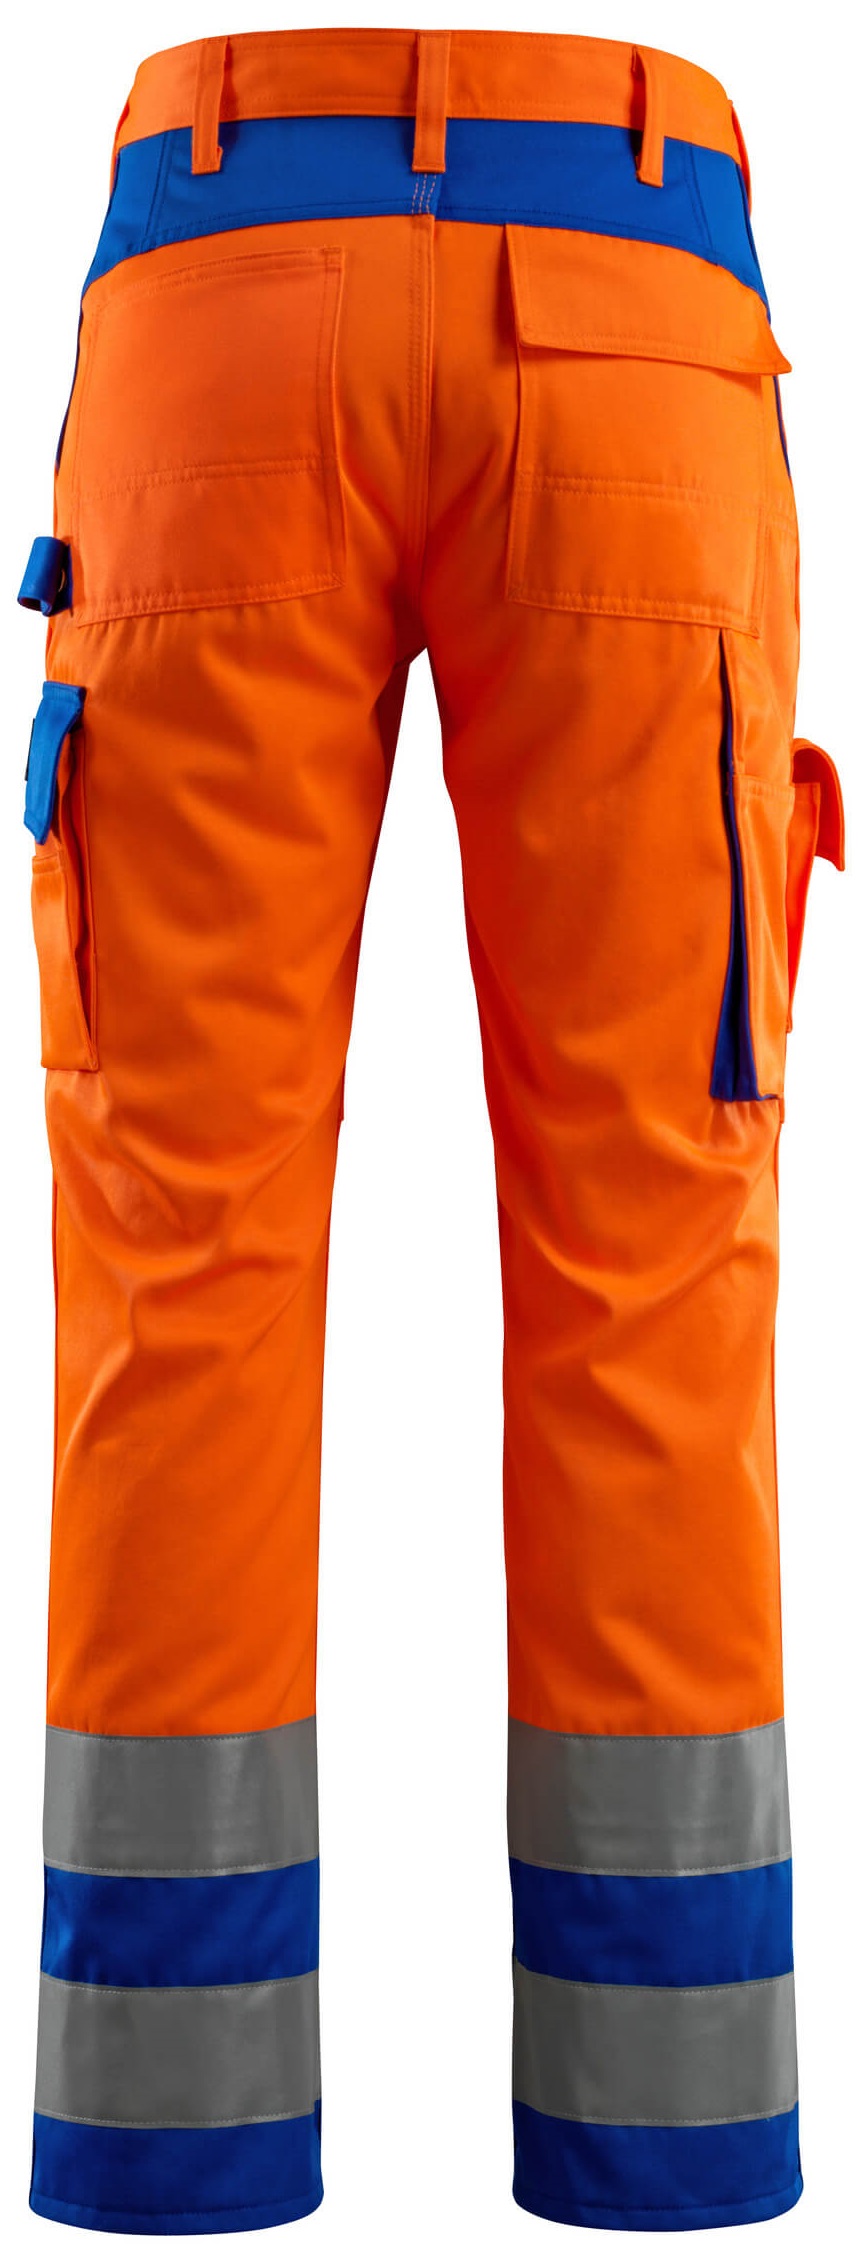 MASCOT-Warnschutz, Warn-Bund-Hose, Olinda, 90 cm, 290 g/m², orange/kornblau
